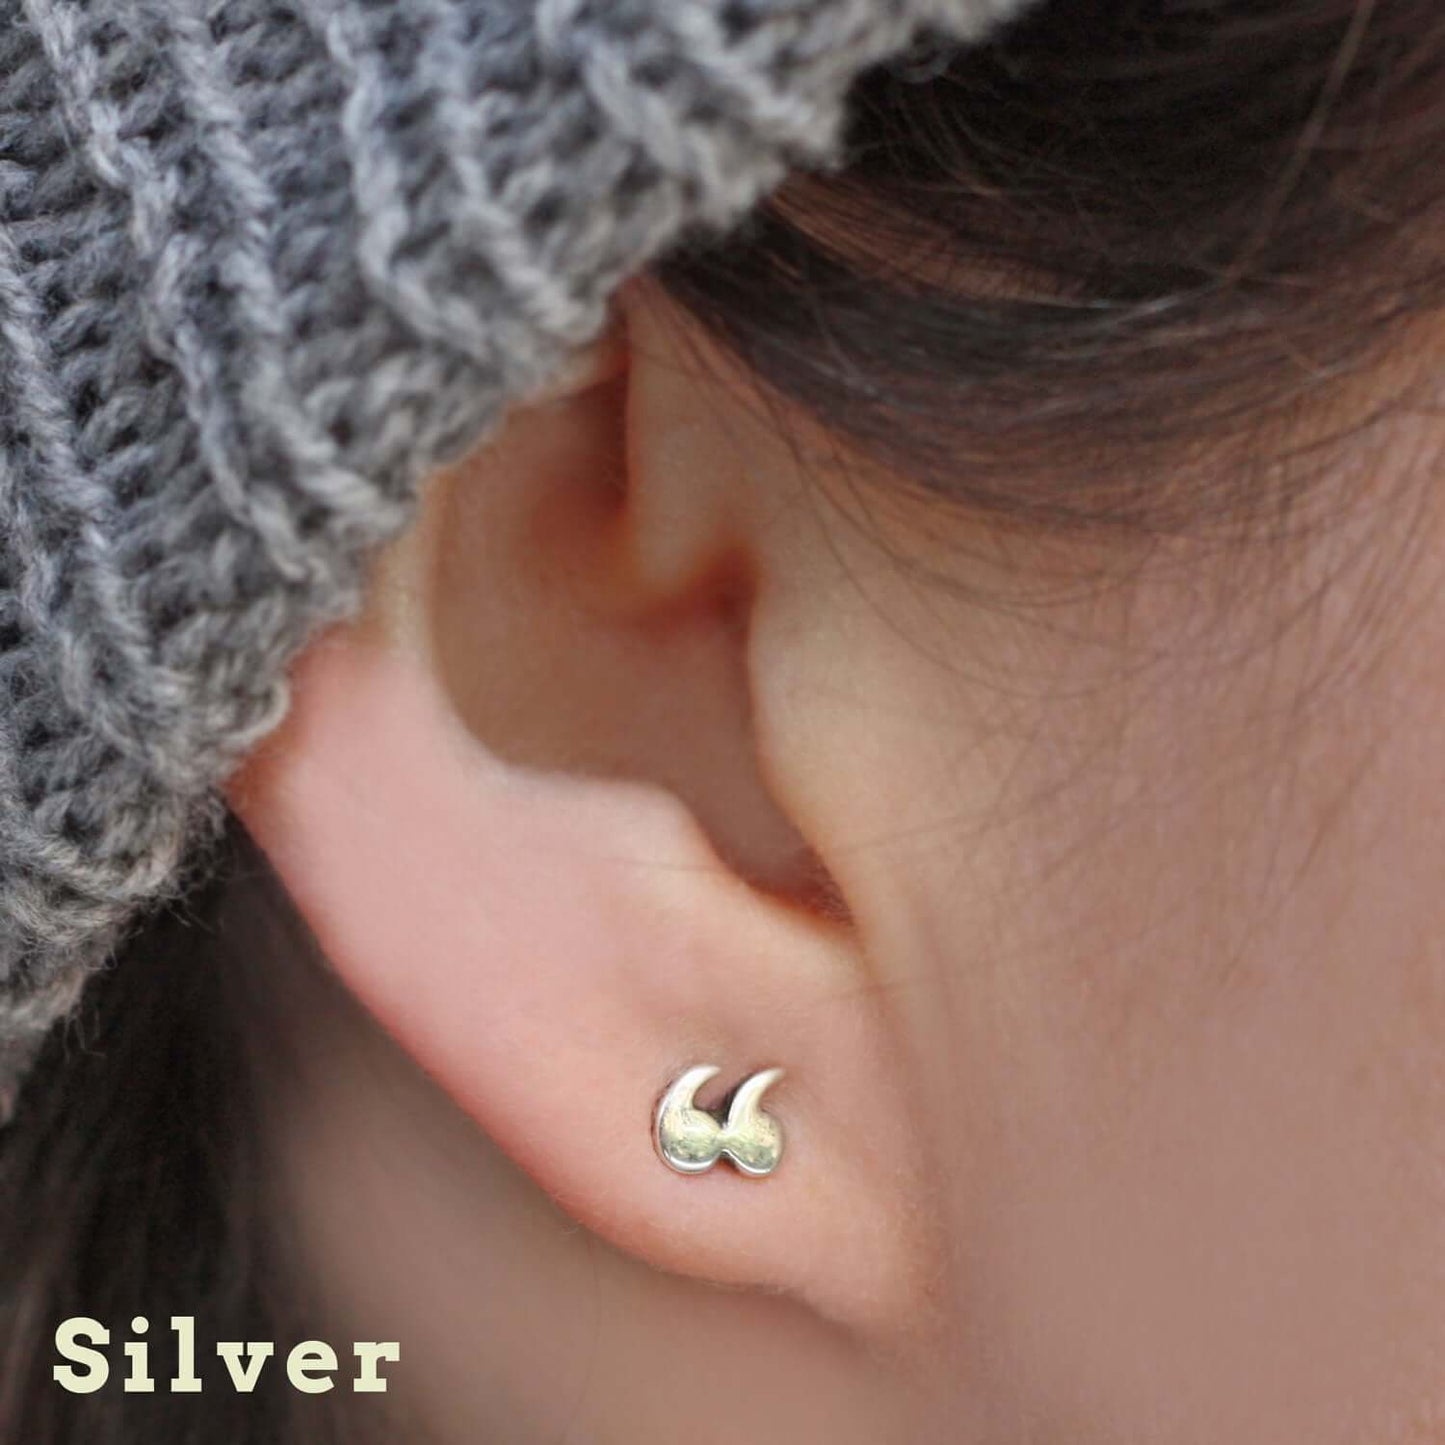 Earrings - Quotation / Speech Marks - Silver